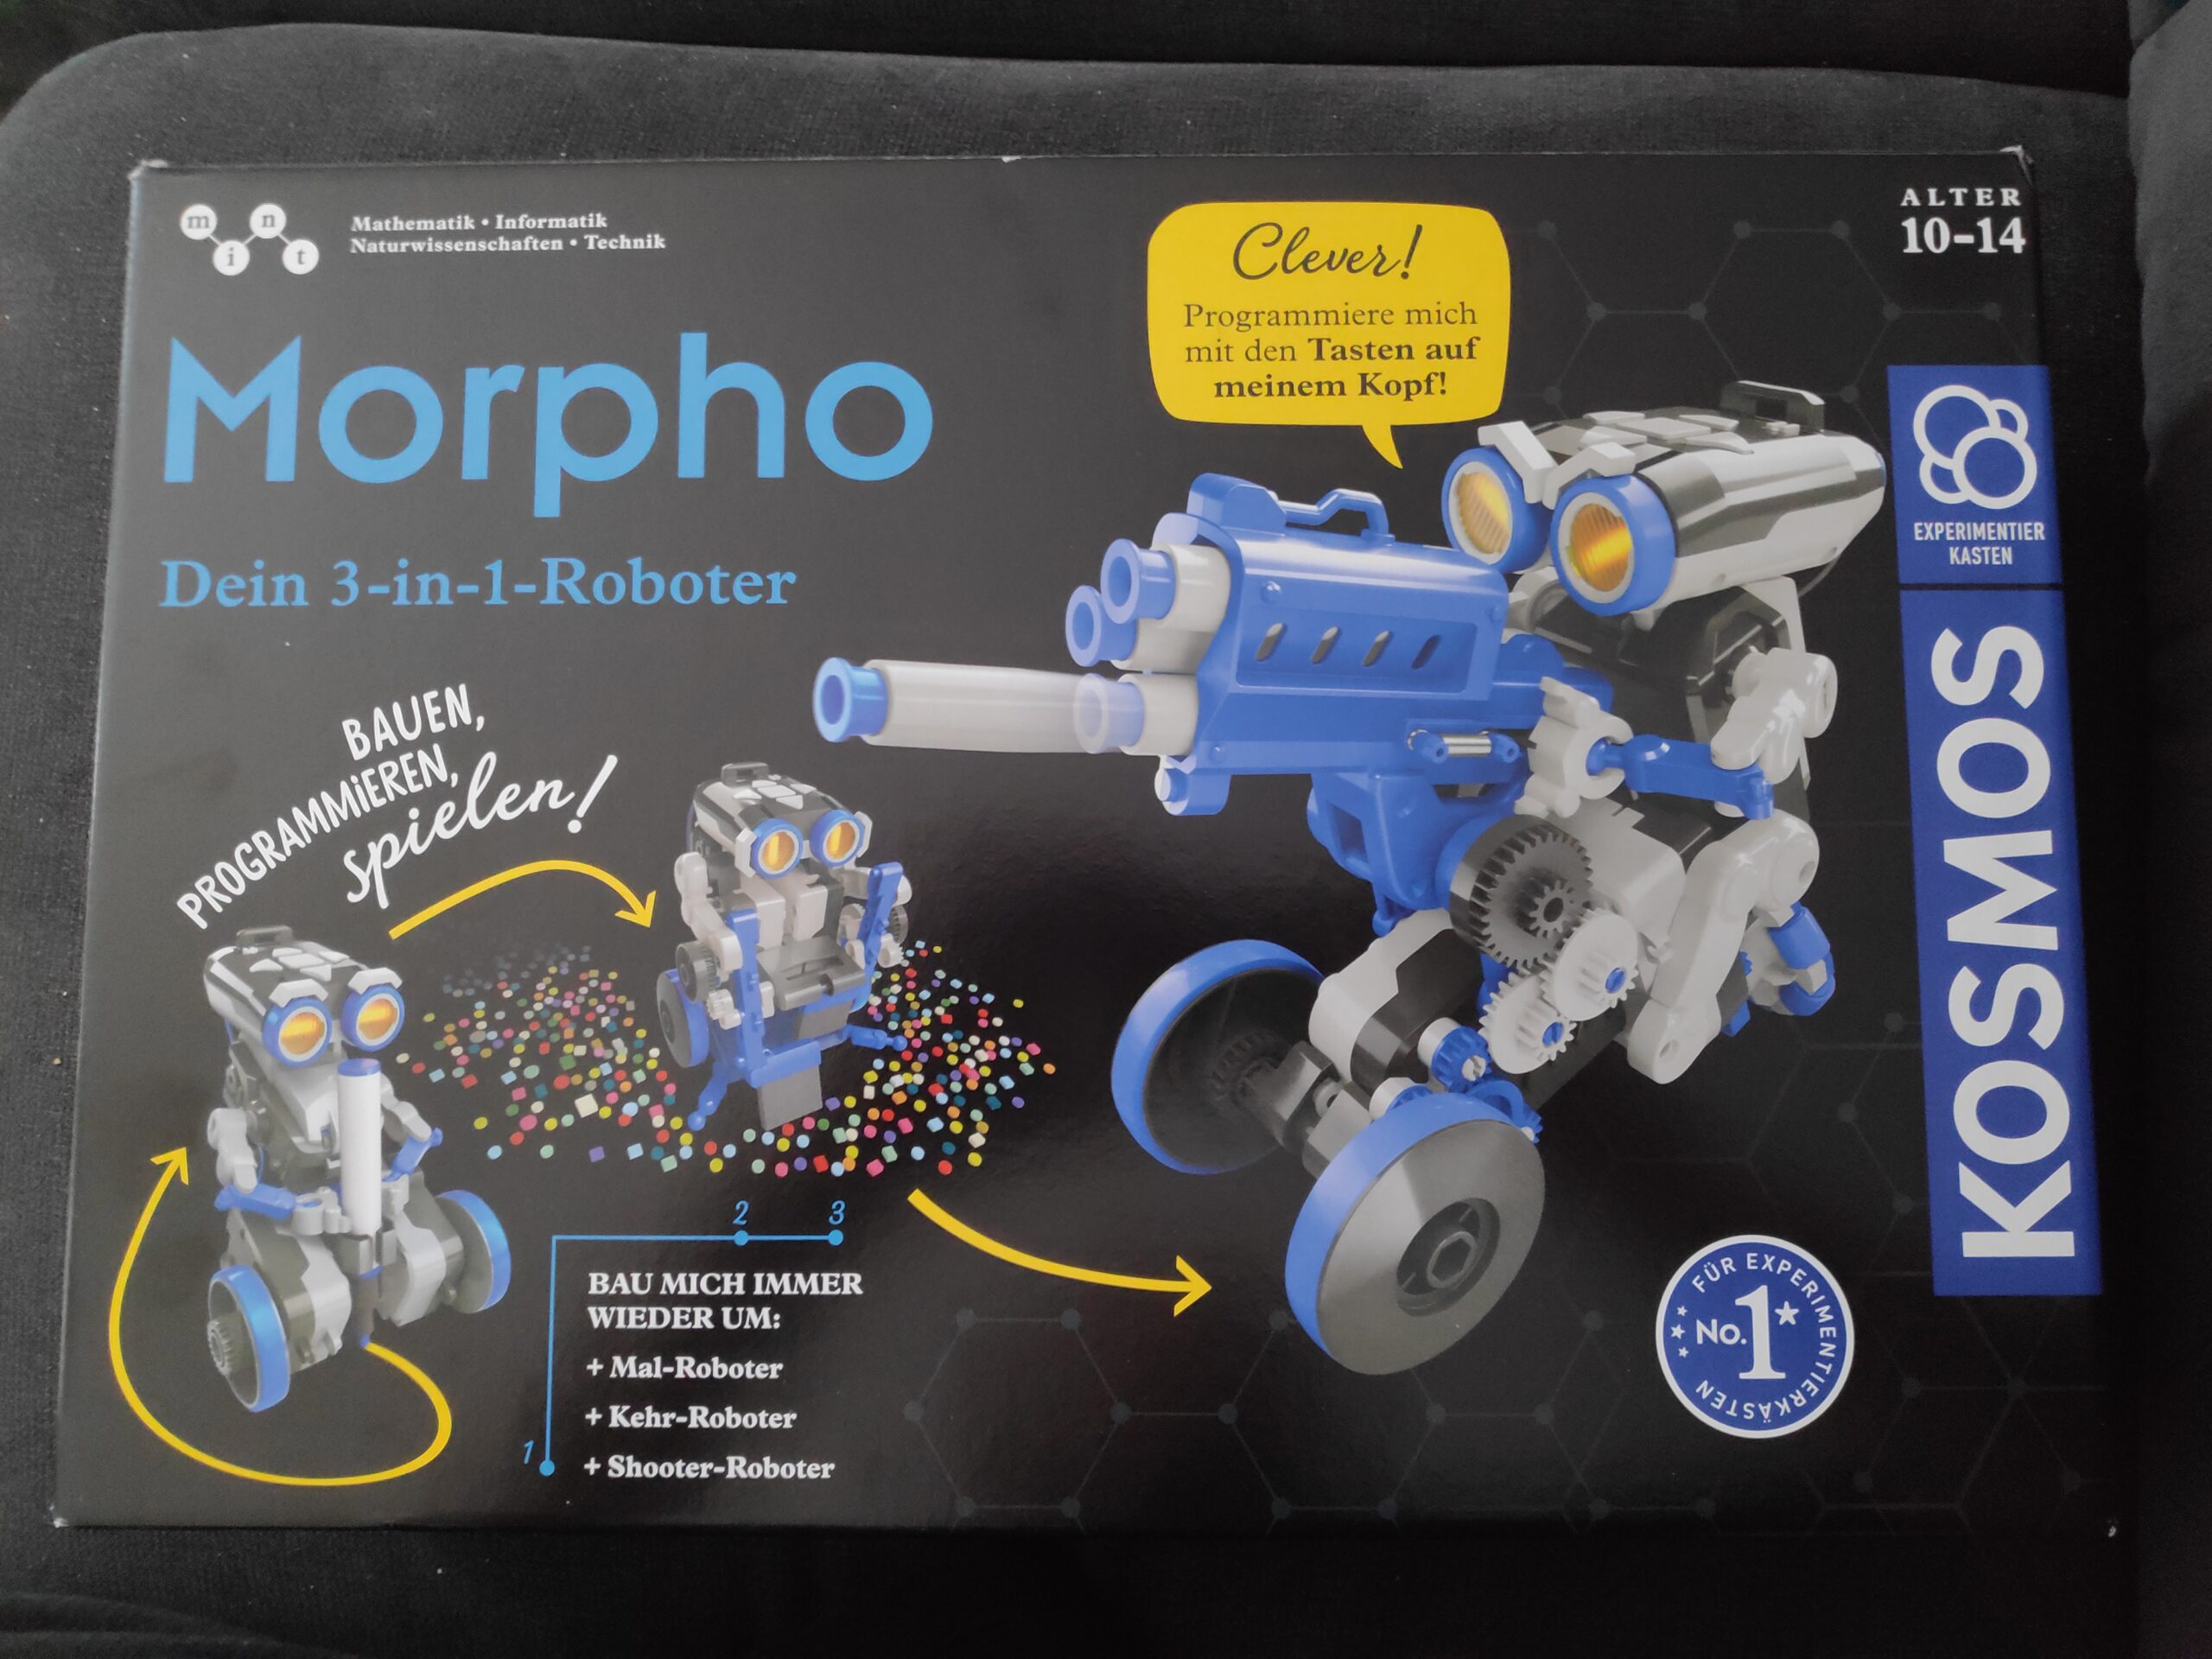 Dein 3-in-1 Roboter Experimentierkasten Morpho